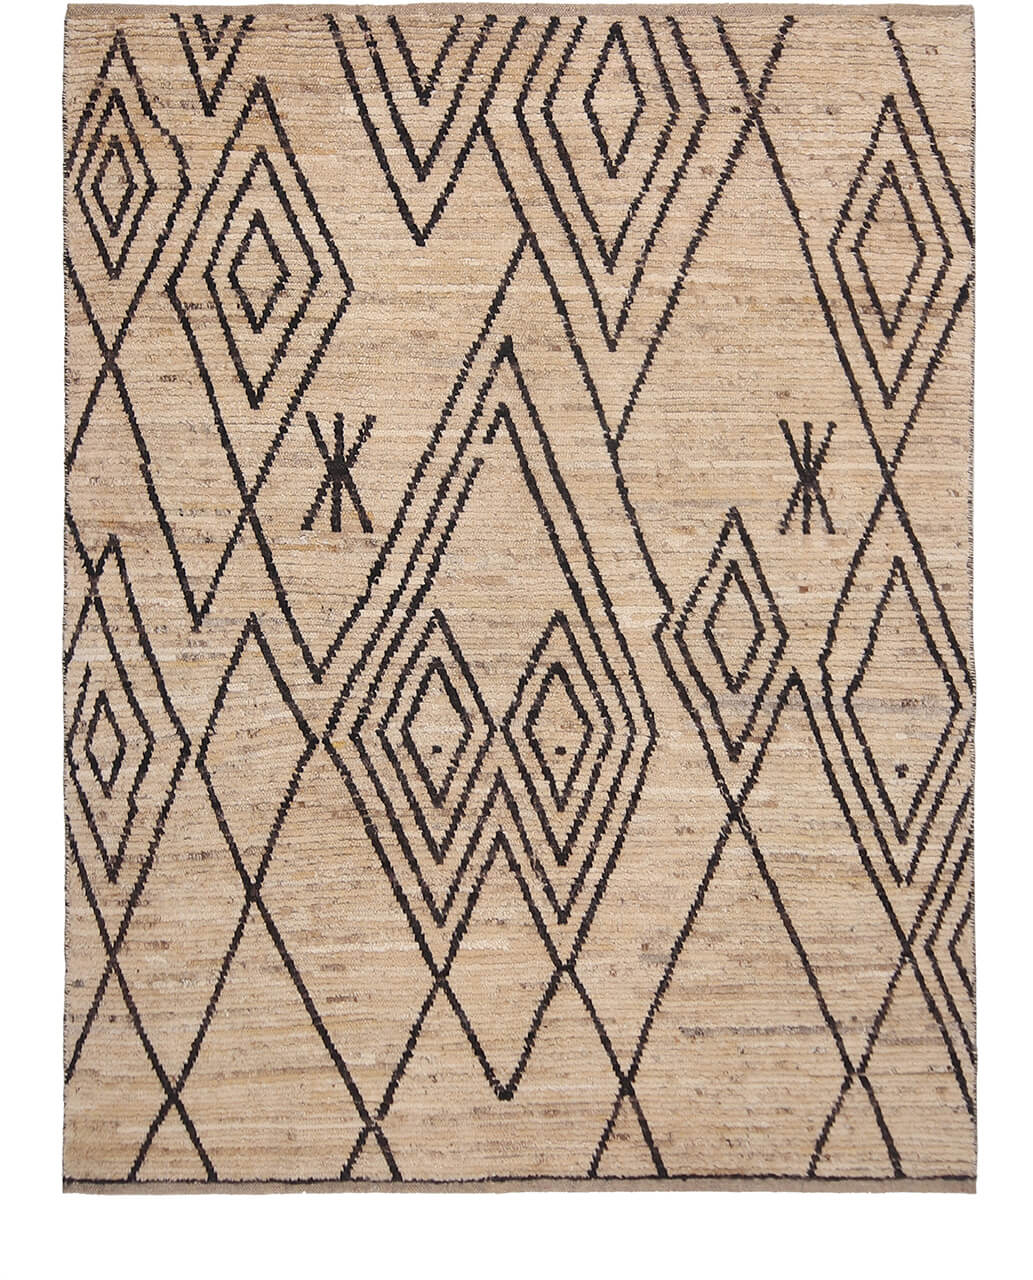 Oriental carpet Ozbek berber 8190223